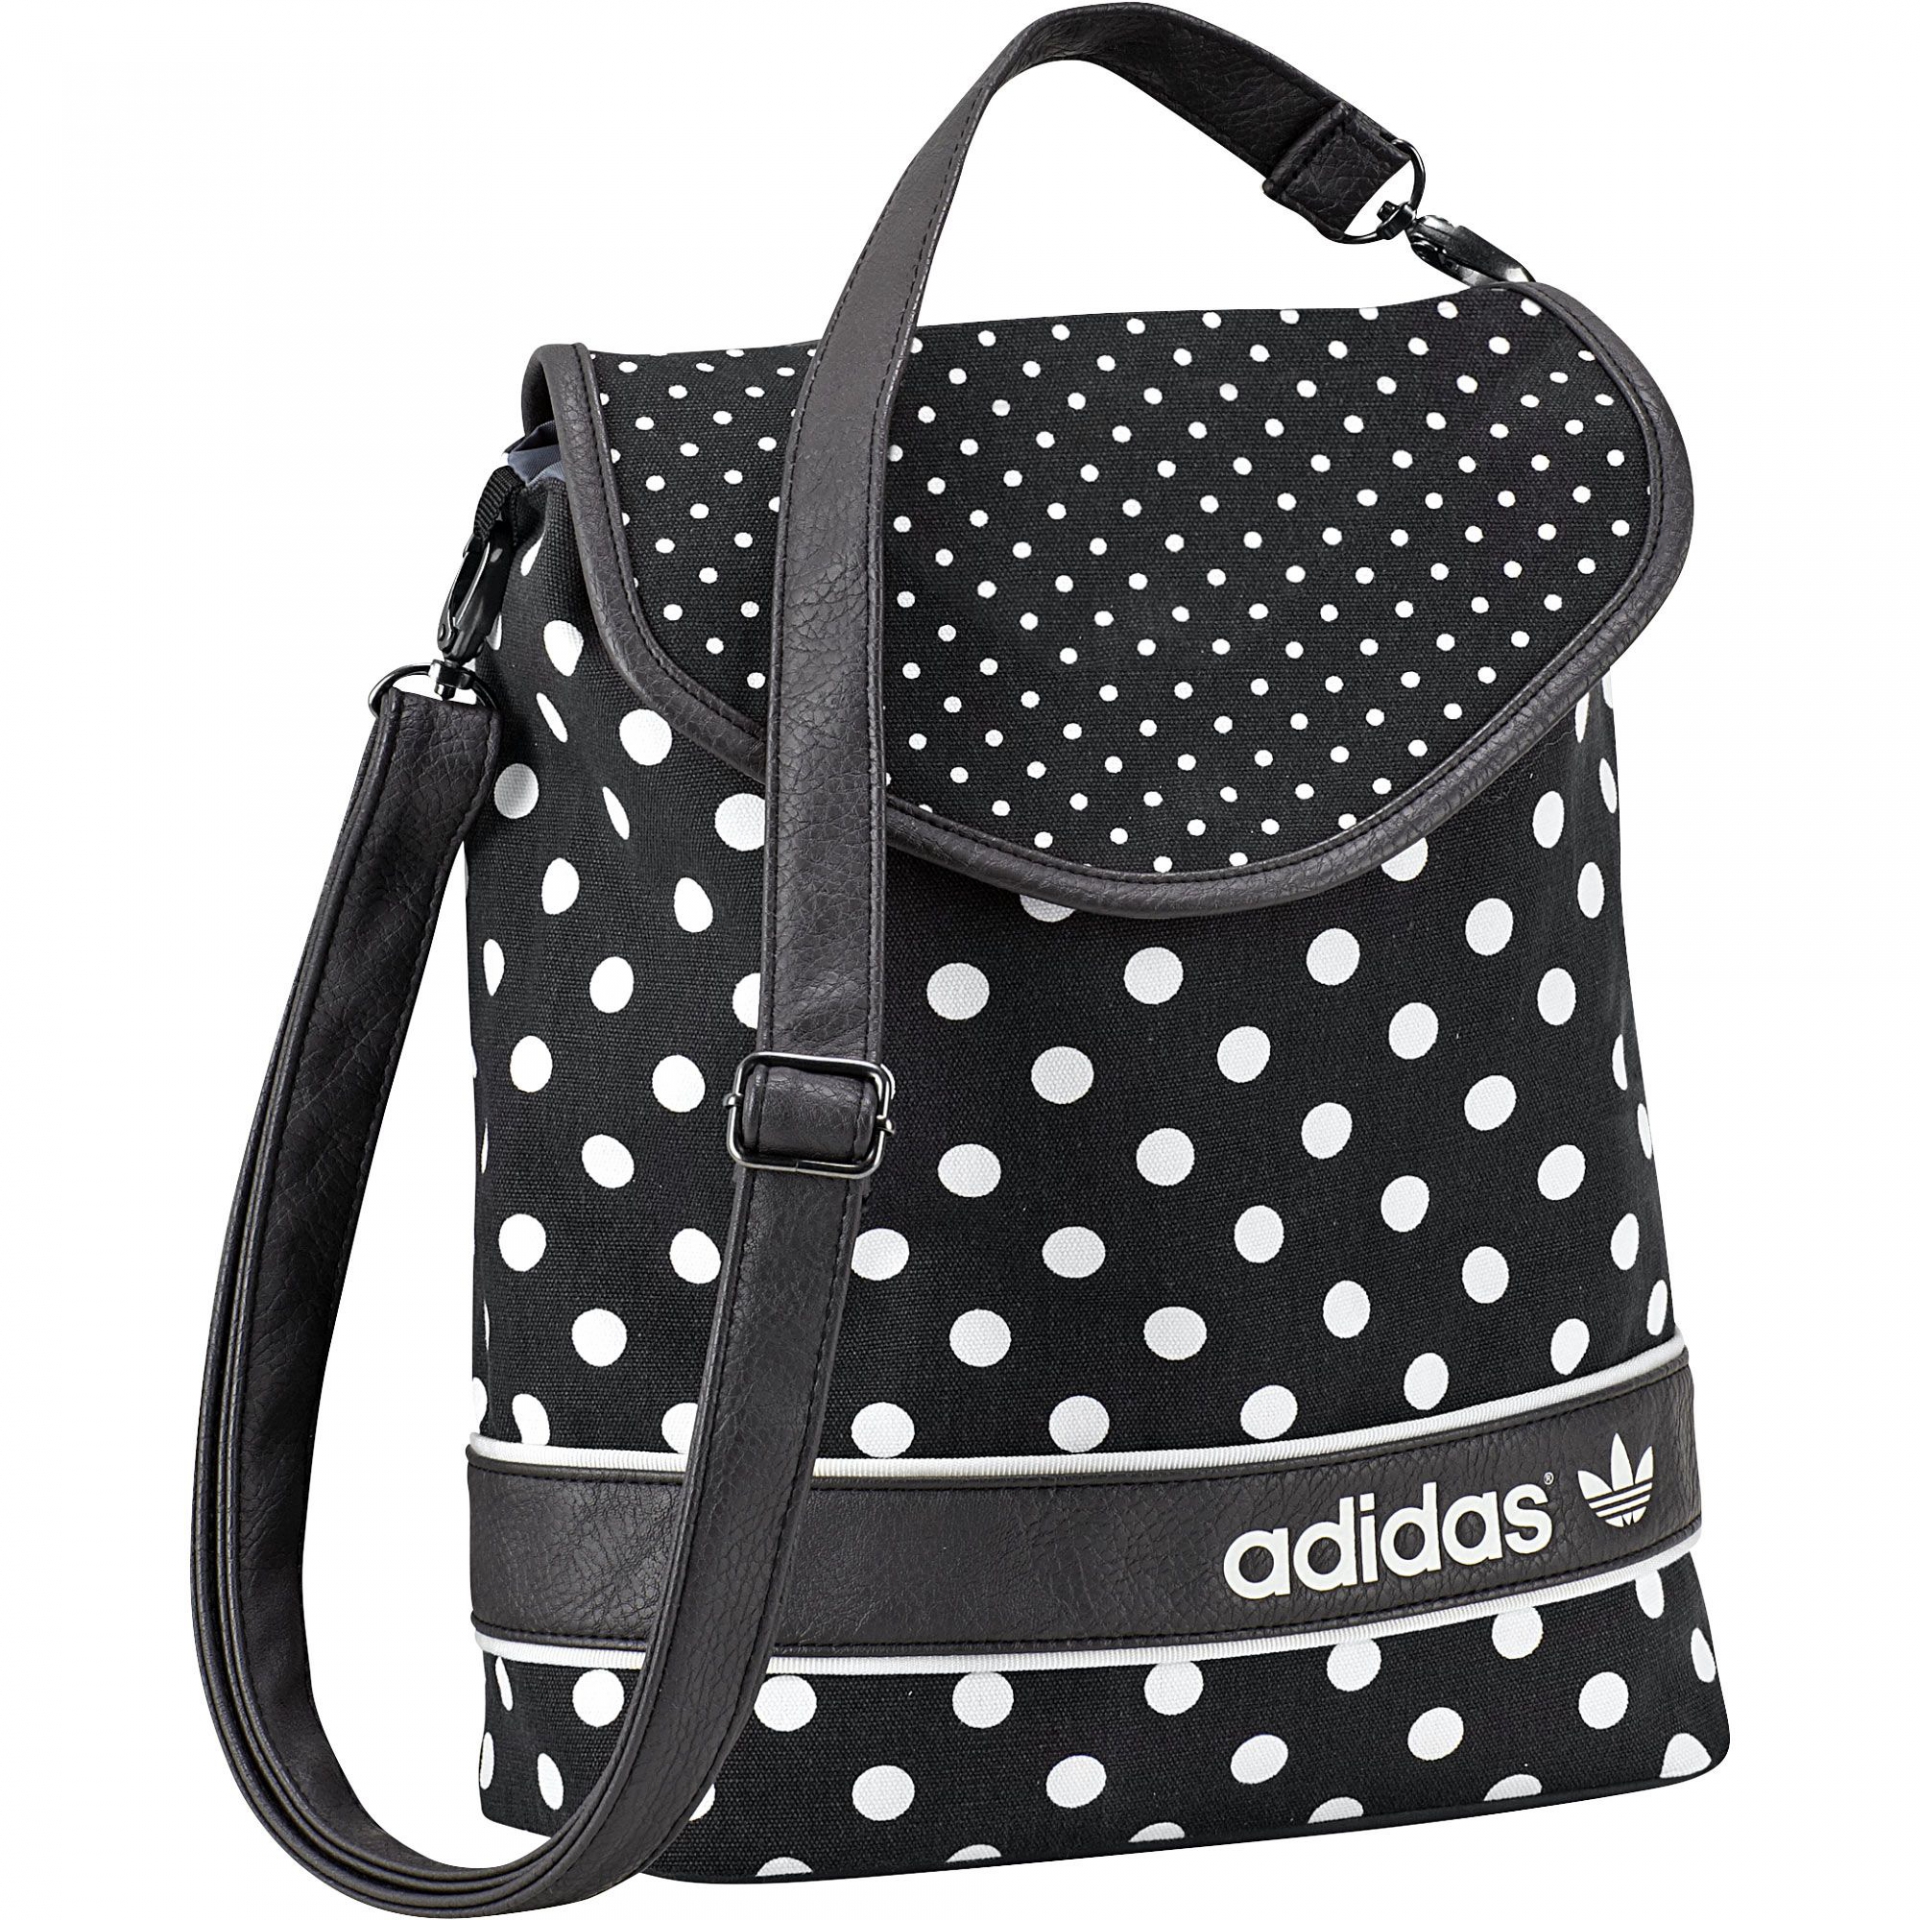 Дамска чанта Adidas в черно с контрастни точки | Secretzone.bg